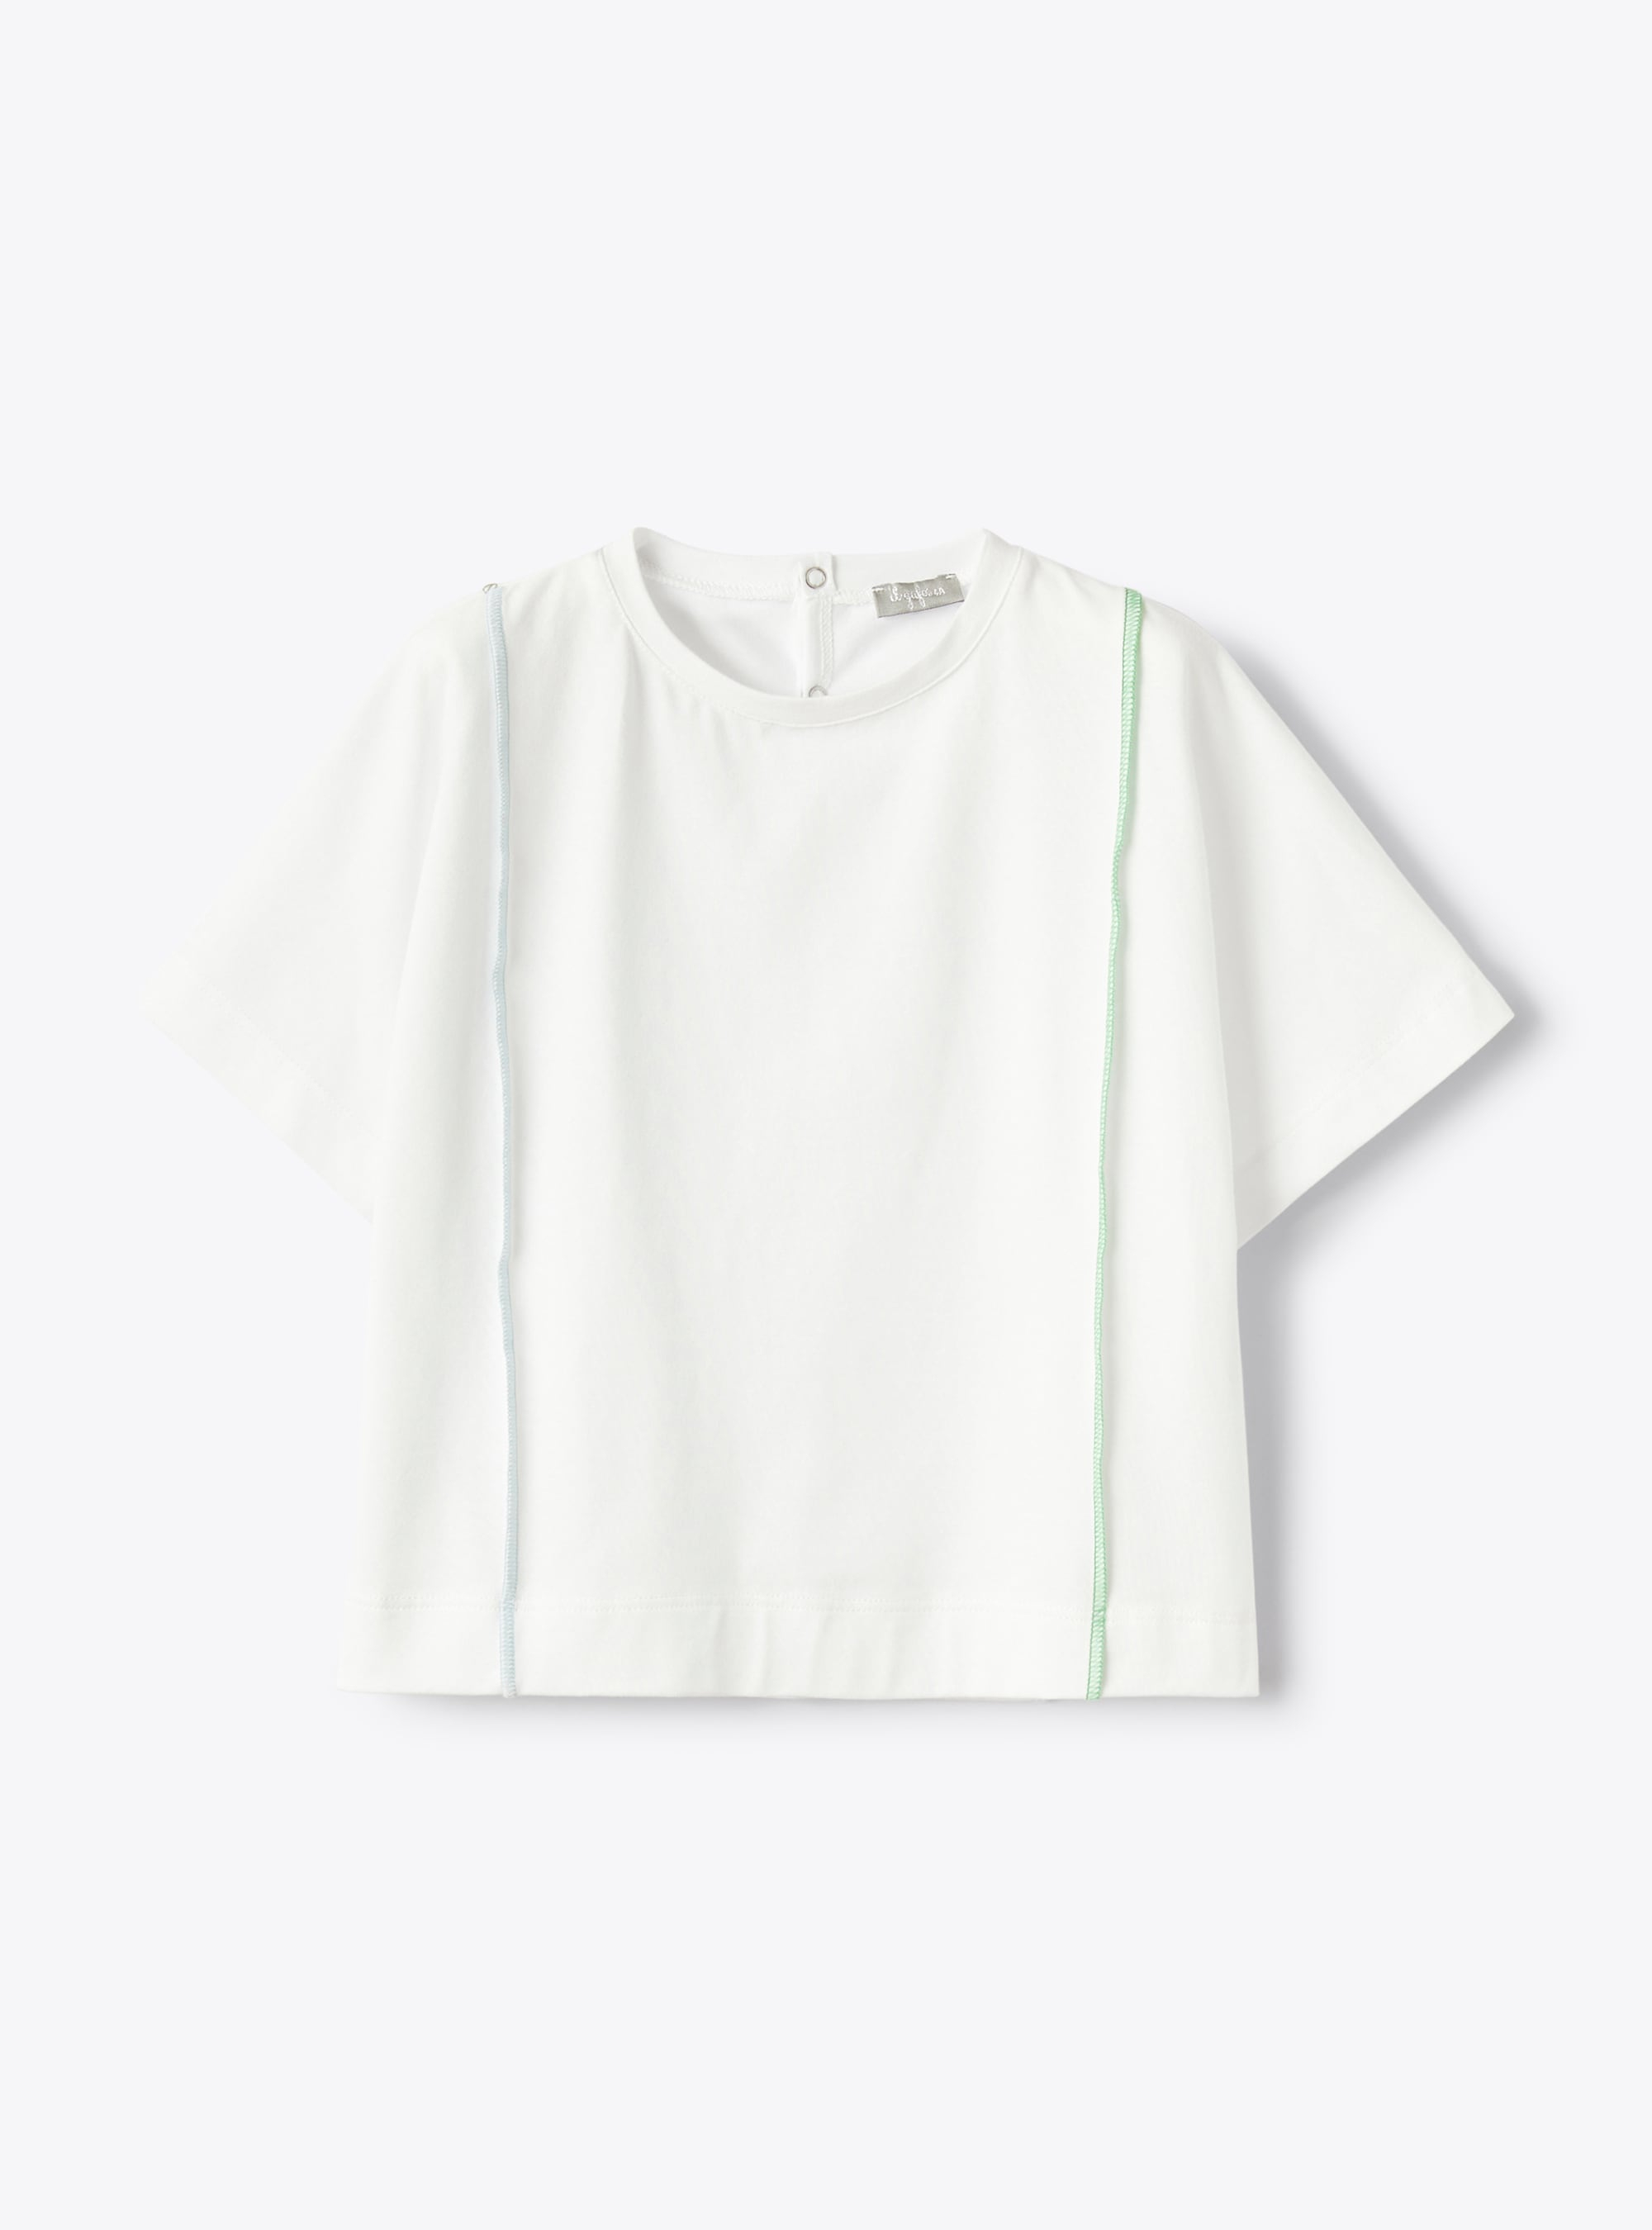 Weißes T-Shirt mit farblich abgehobenen Nähten - T-shirts - Il Gufo